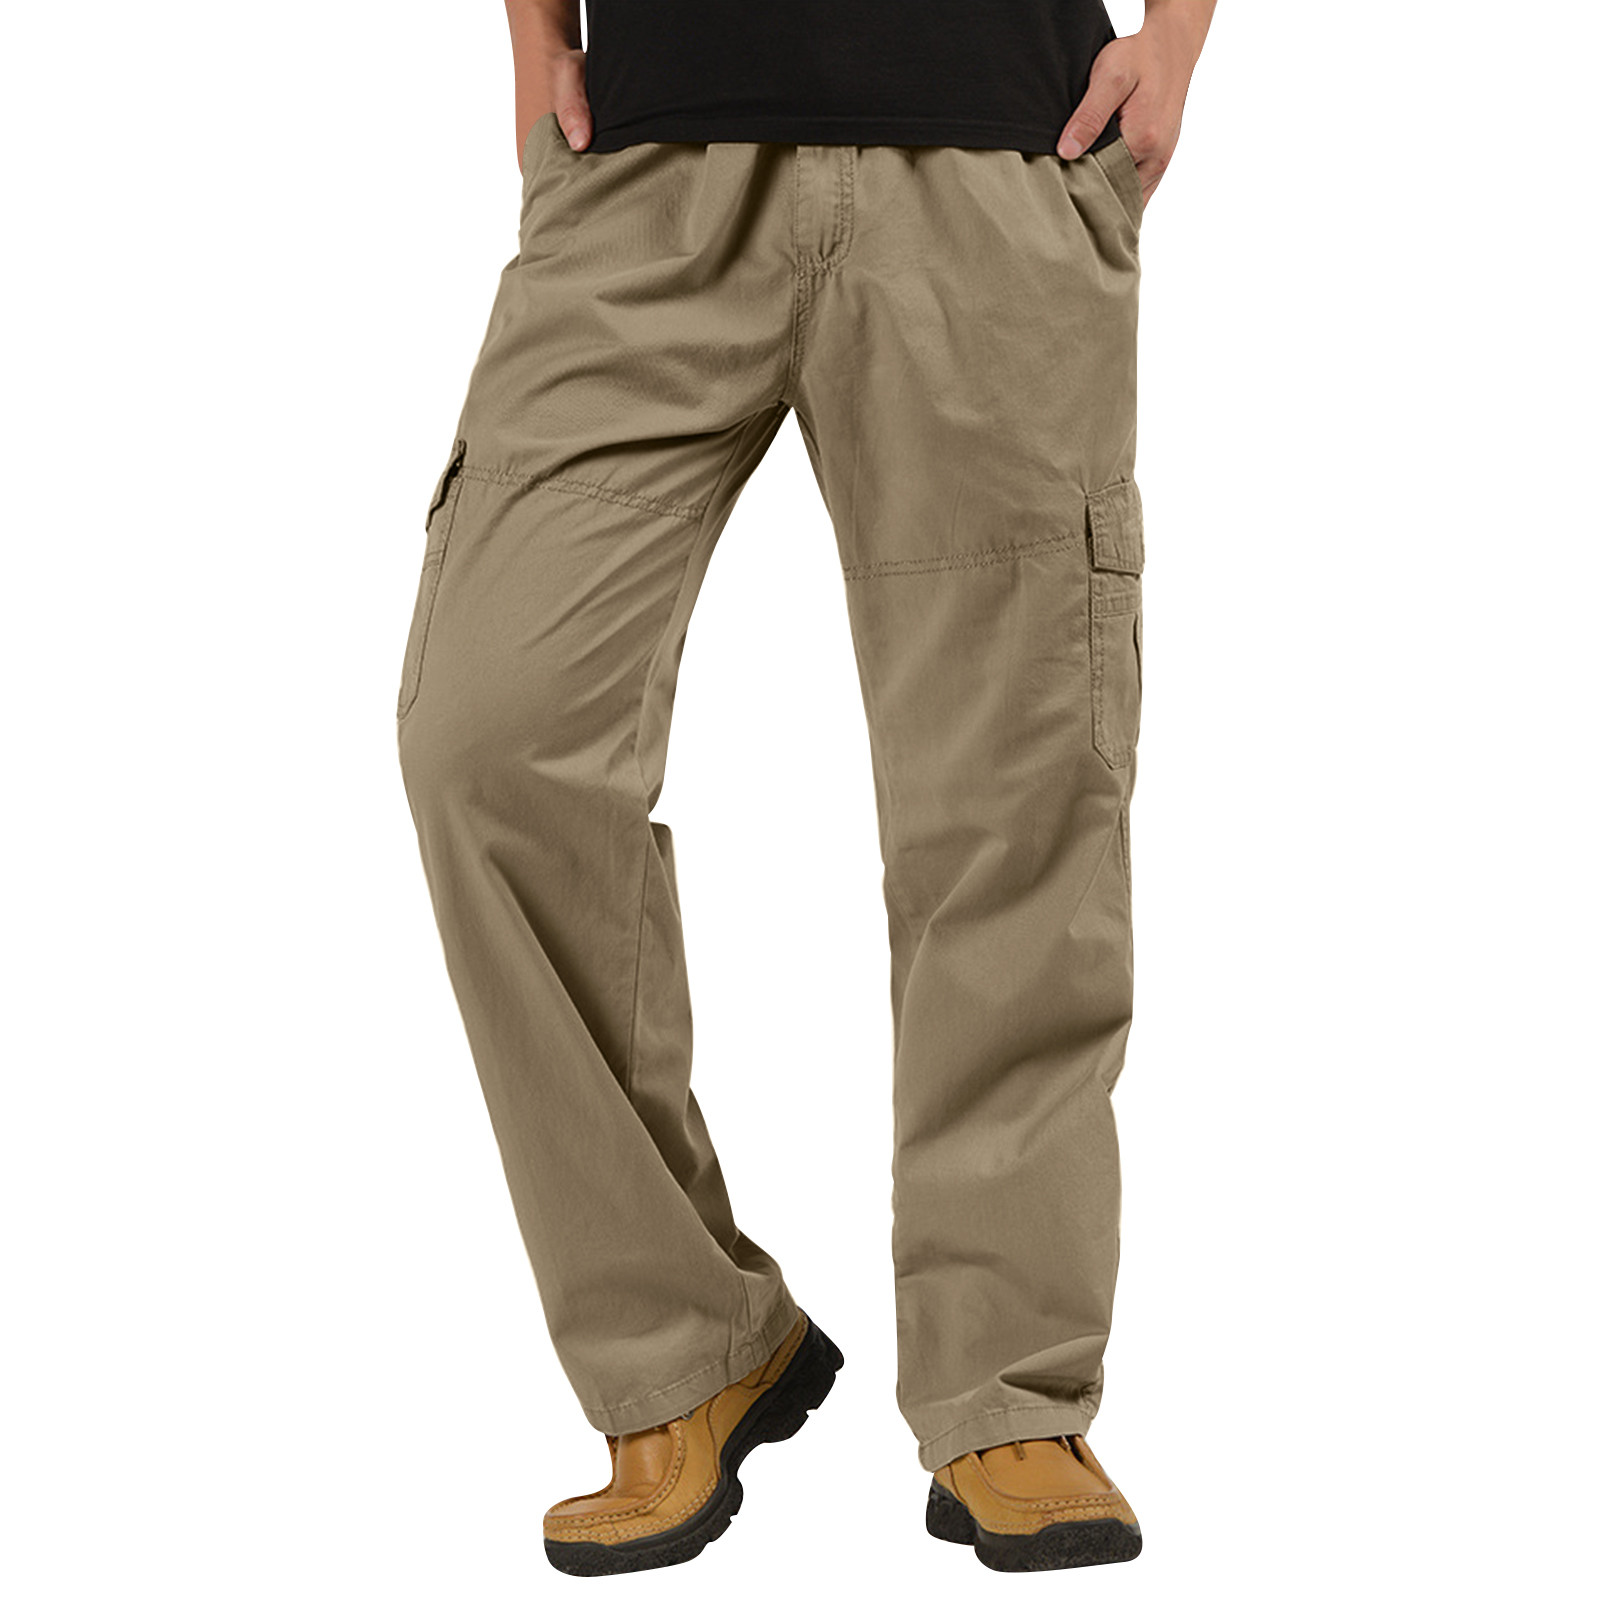 Rigardu pants for men Mens Fashion Casual Loose Cotton Plus Size Pocket ...